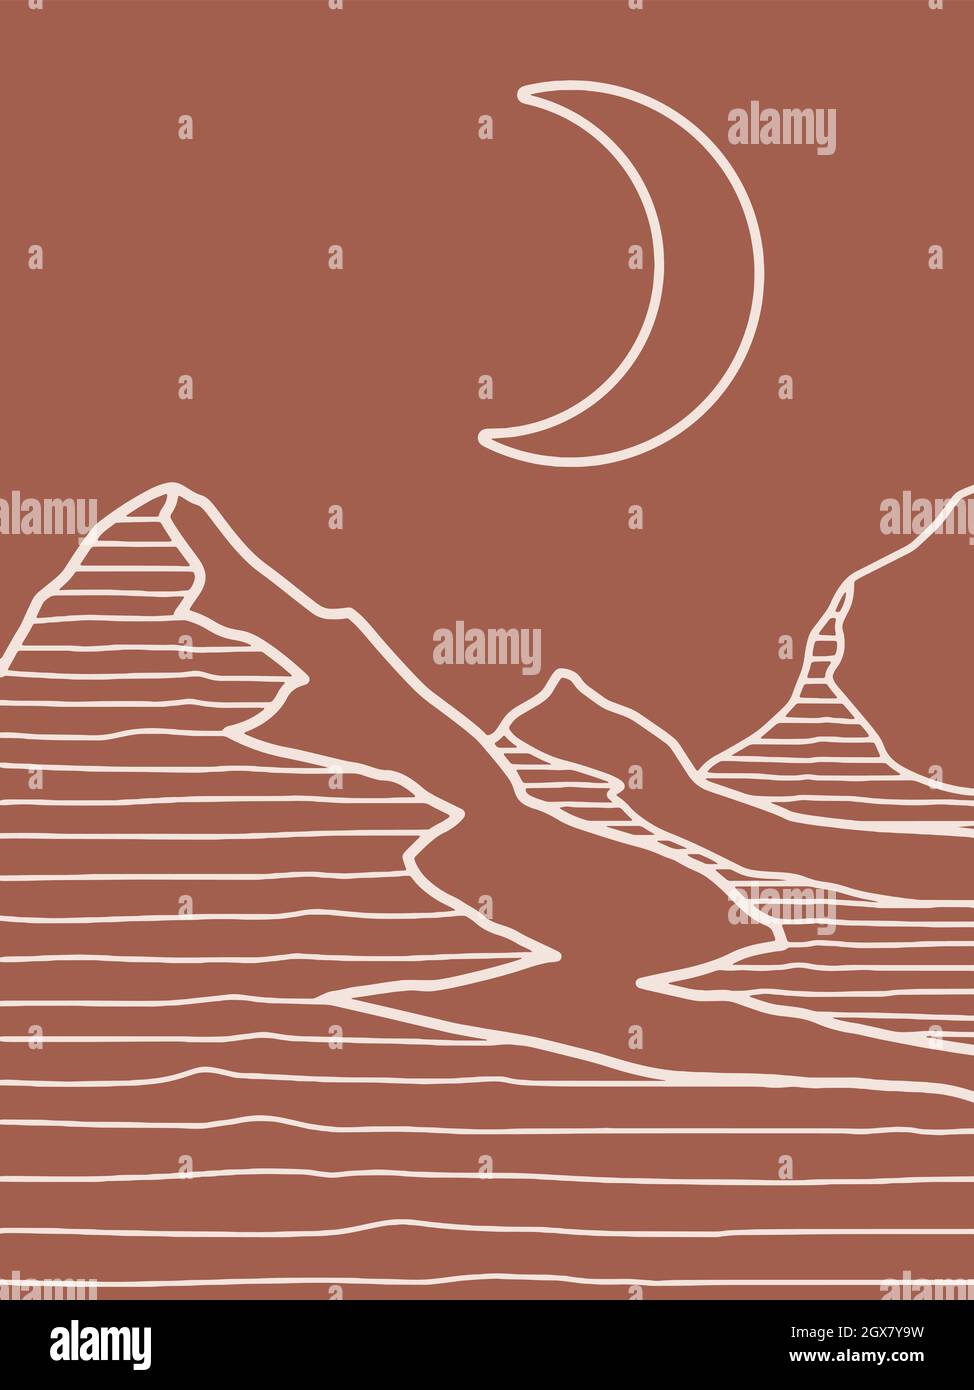 Art montagnard et lunaire sur fond de terre cuite marron Illustration de Vecteur